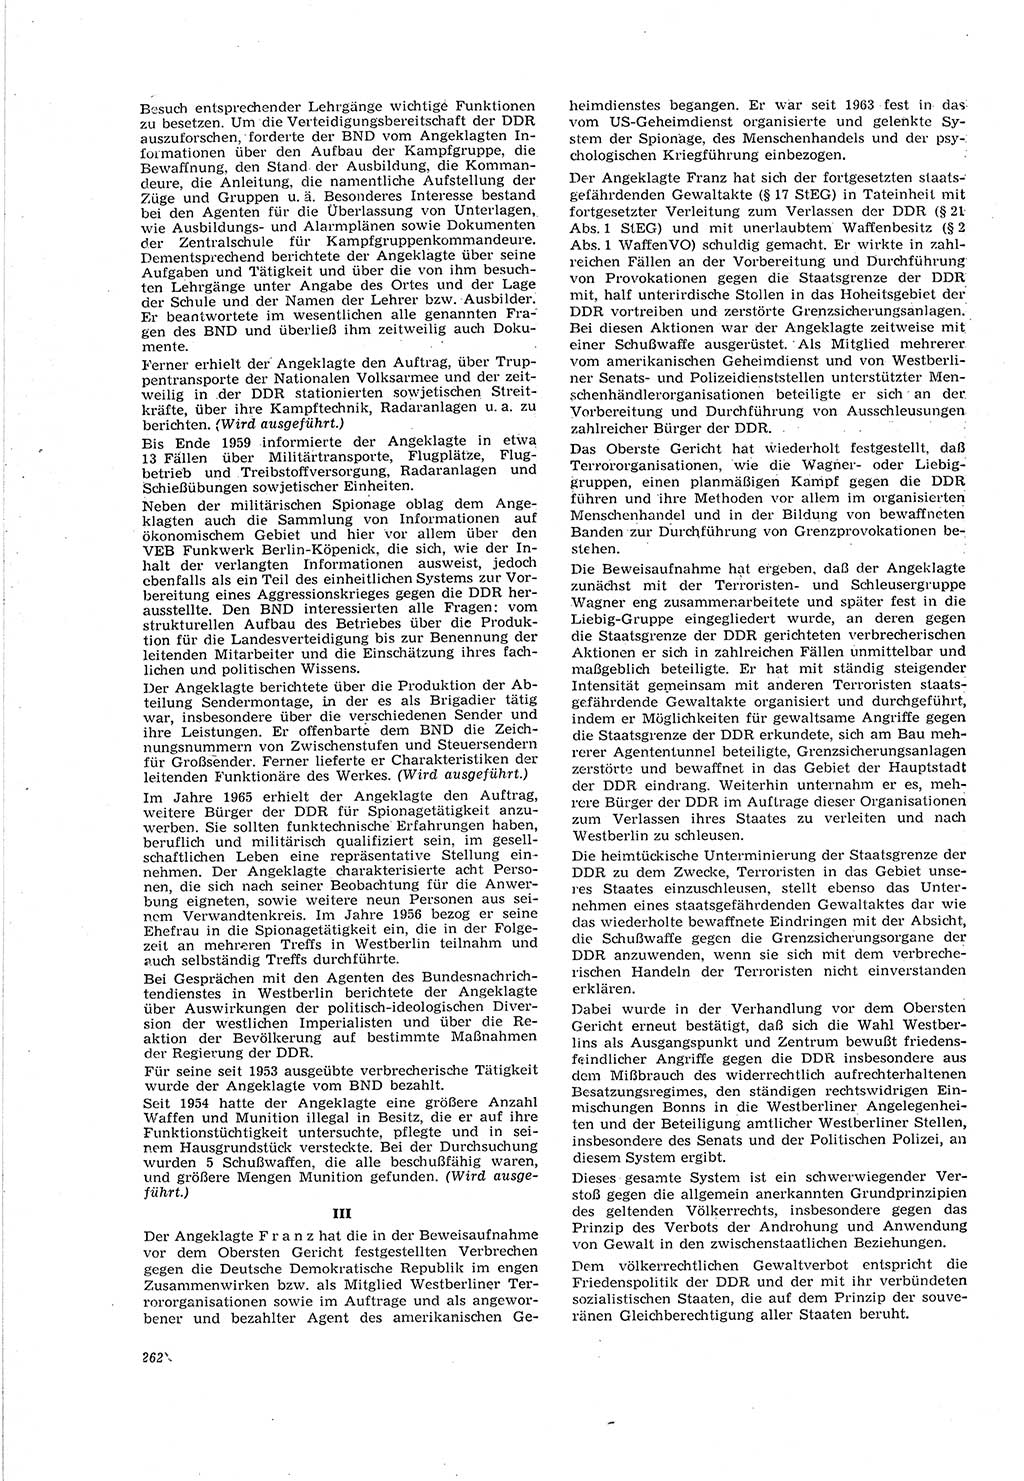 Neue Justiz (NJ), Zeitschrift für Recht und Rechtswissenschaft [Deutsche Demokratische Republik (DDR)], 20. Jahrgang 1966, Seite 262 (NJ DDR 1966, S. 262)